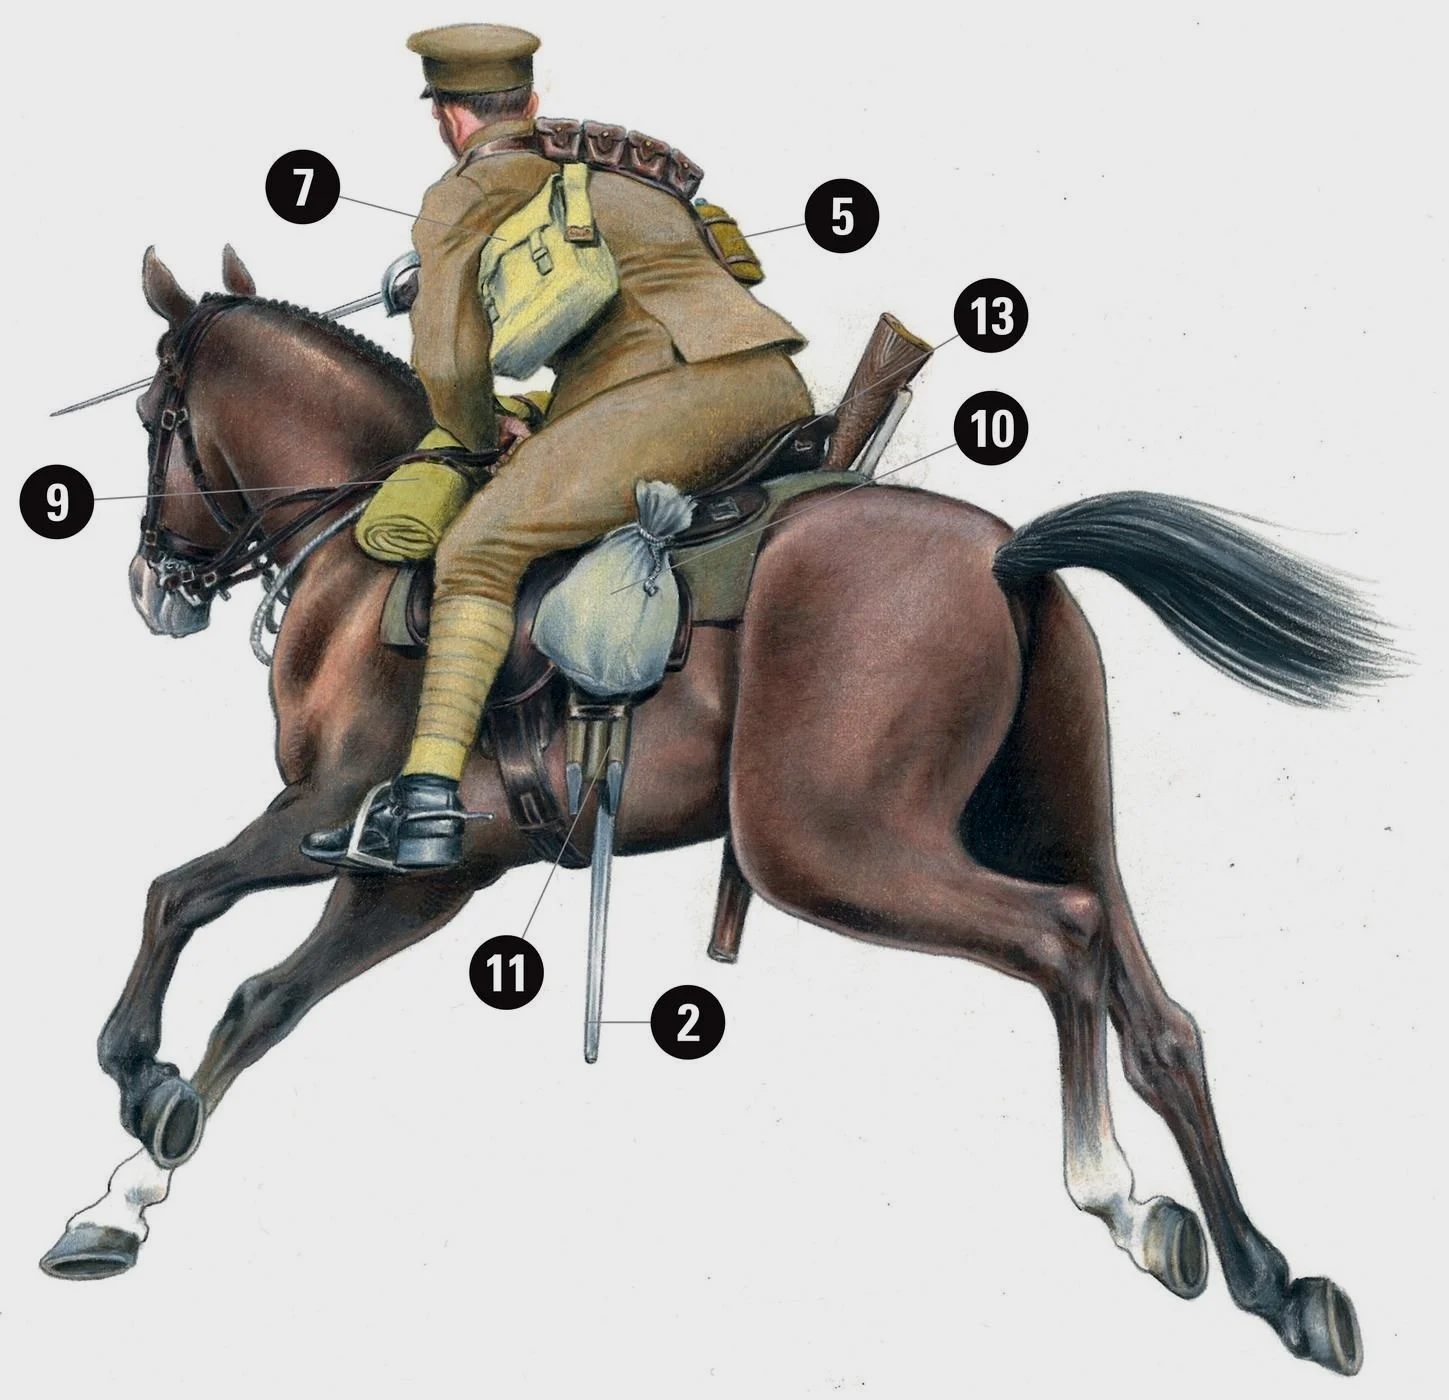 除去骑兵剑外，他还配备有一把SMLE步枪，战斗中一些骑兵曾经下马，以射击掩护友军的冲锋